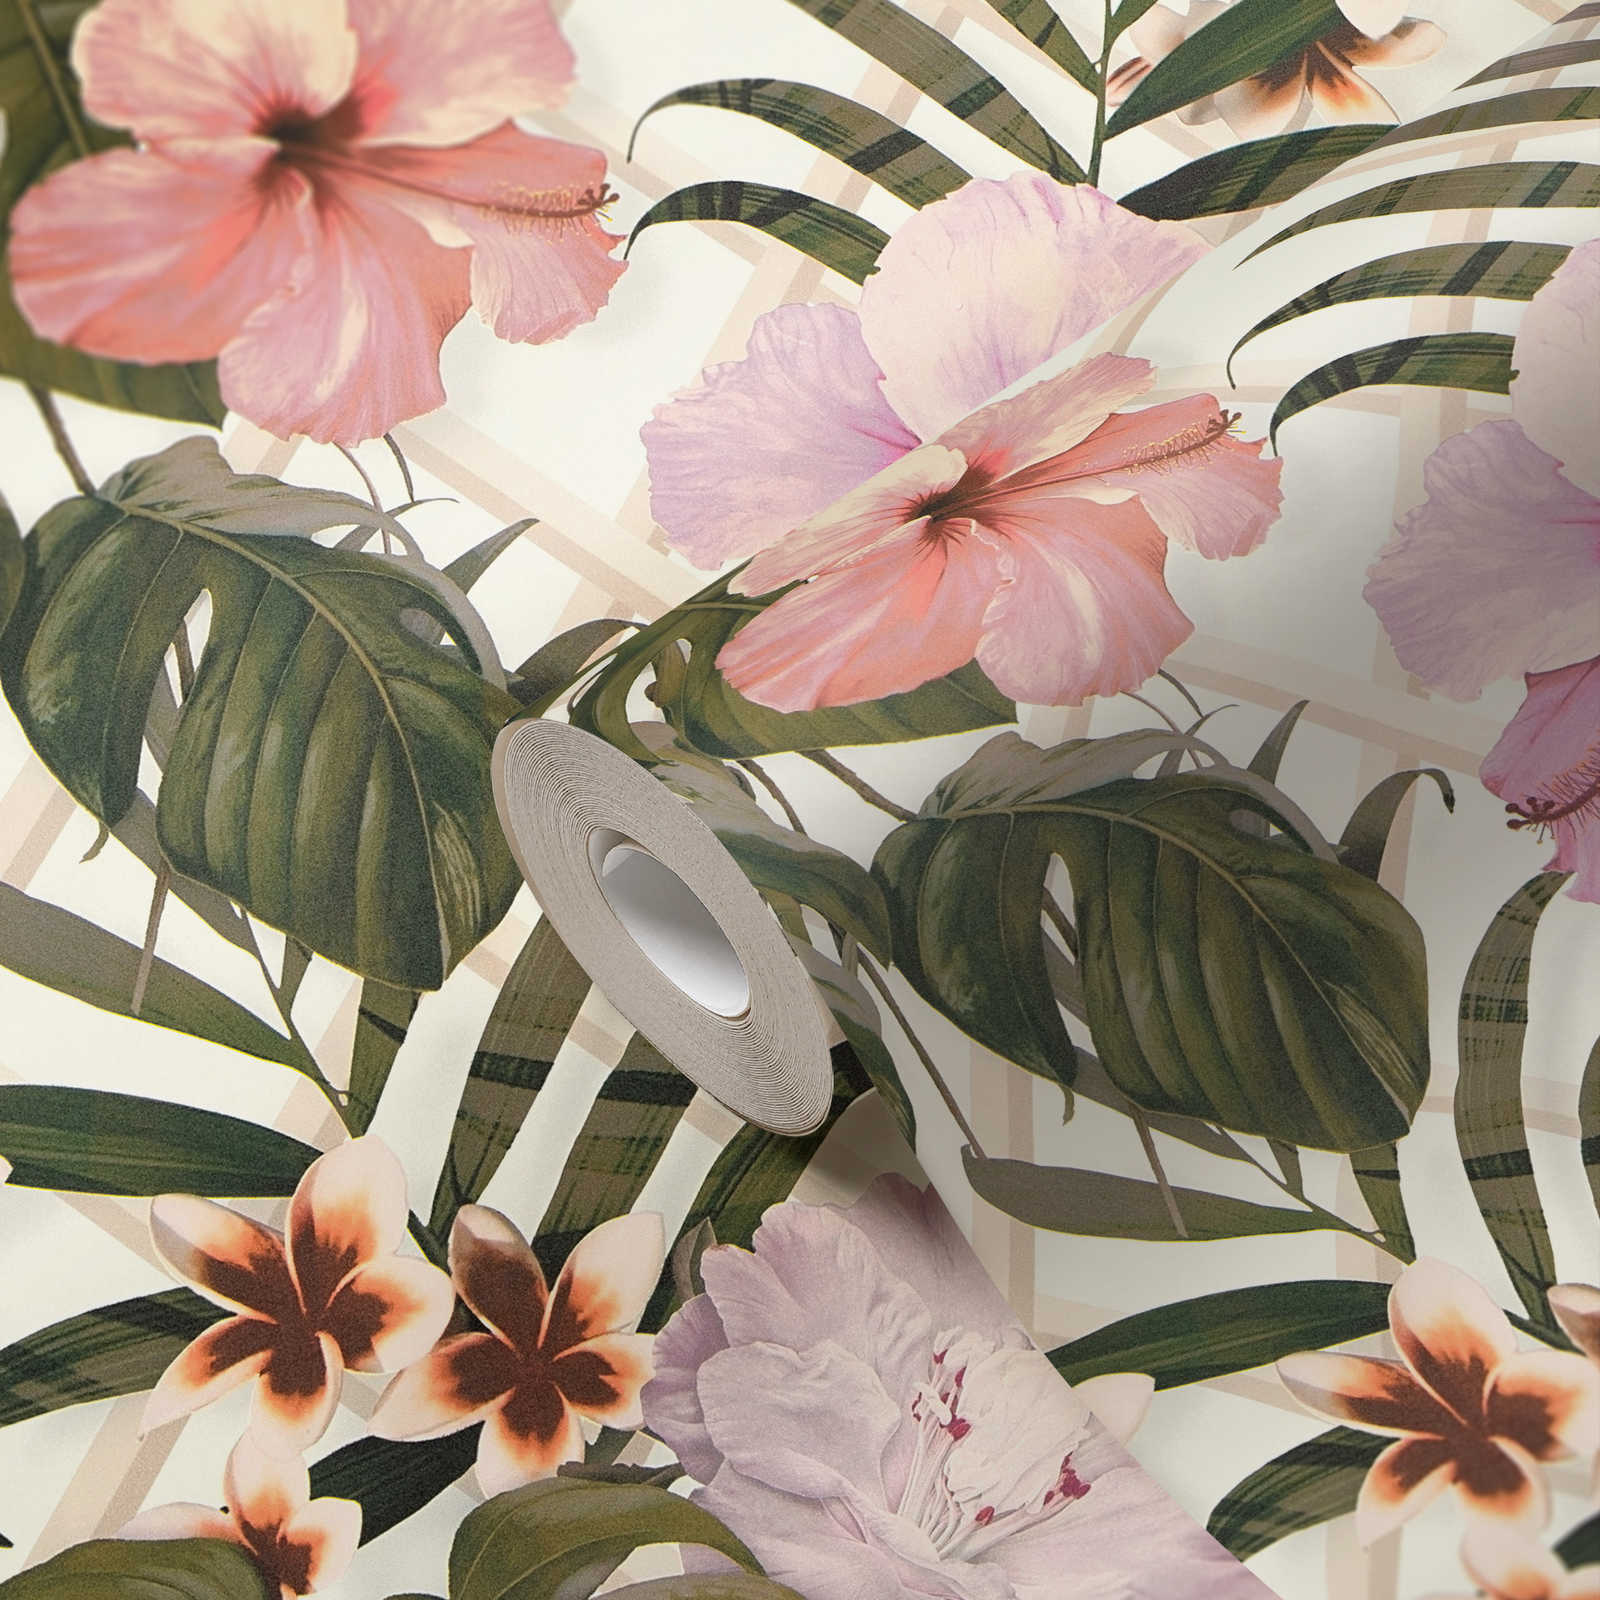             Dschungel Tapete mit Blumen Muster – Grün, Rosa, Weiß
        